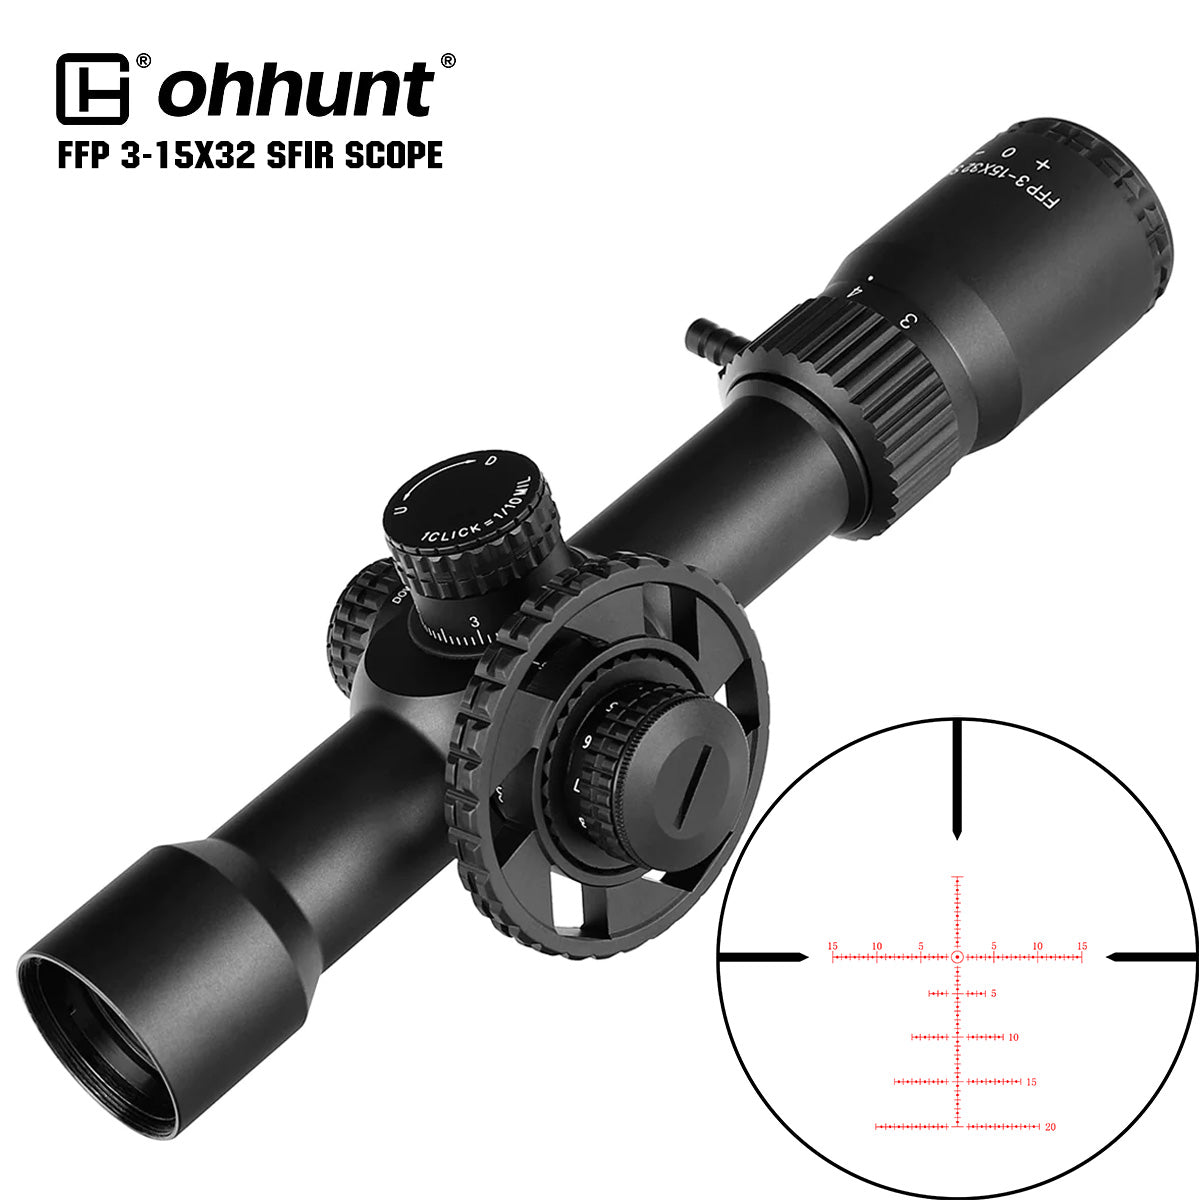 ohhunt® LR FFP 3-15X32 SFIR Rifle Scope